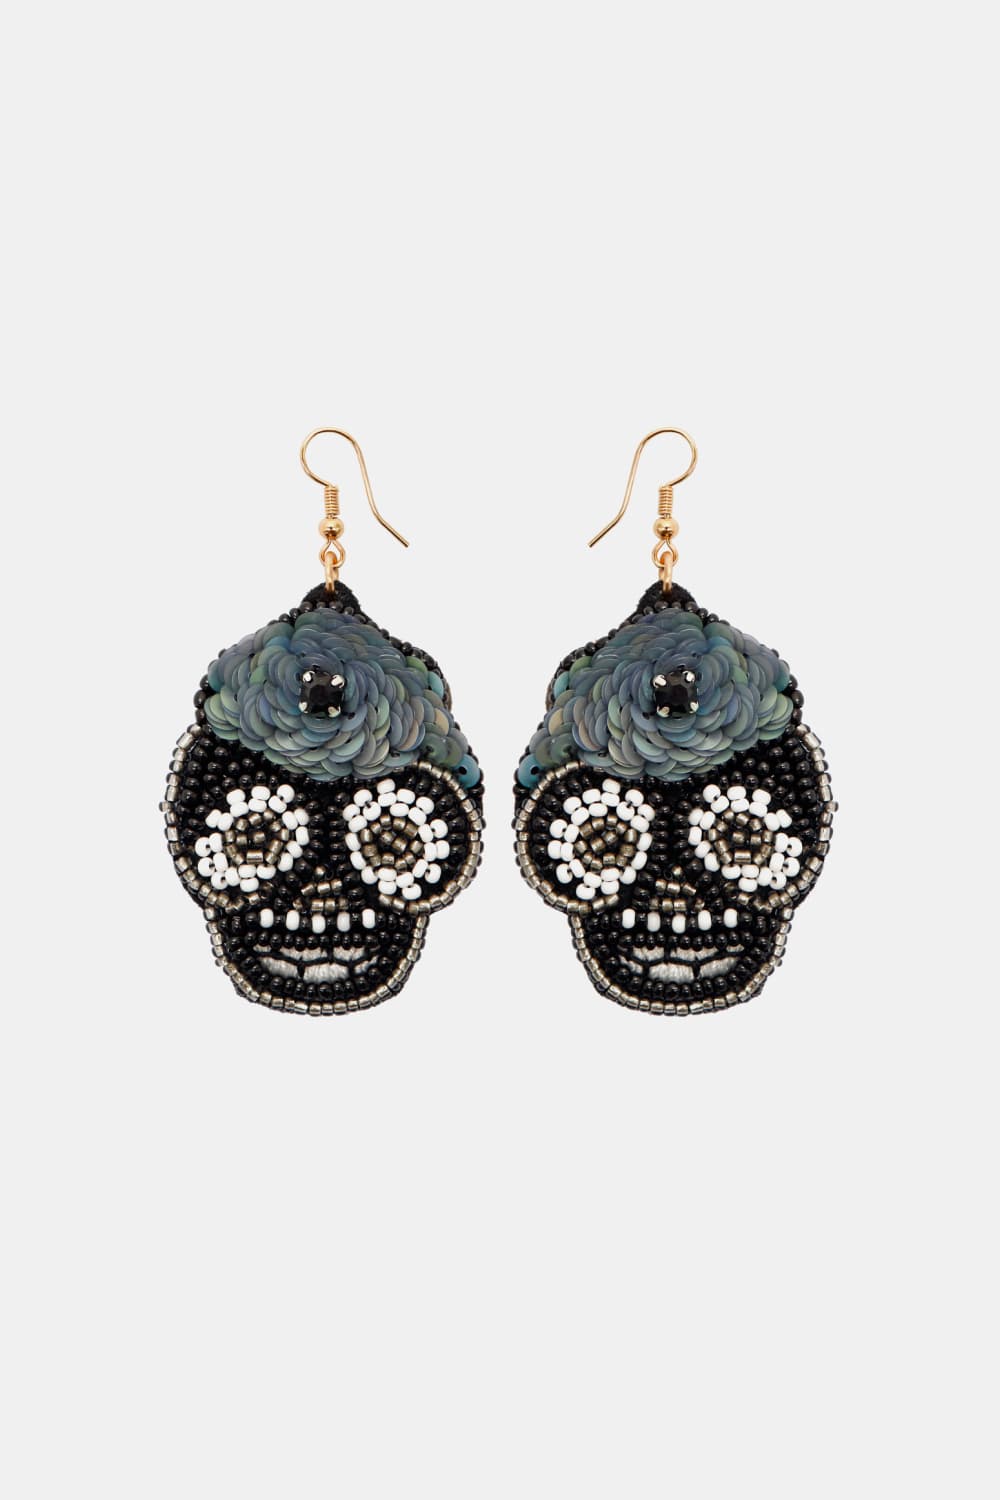 Copper Beaded Detail Dangle Earrings - Black / One Size - Women’s Jewelry - Earrings - 4 - 2024